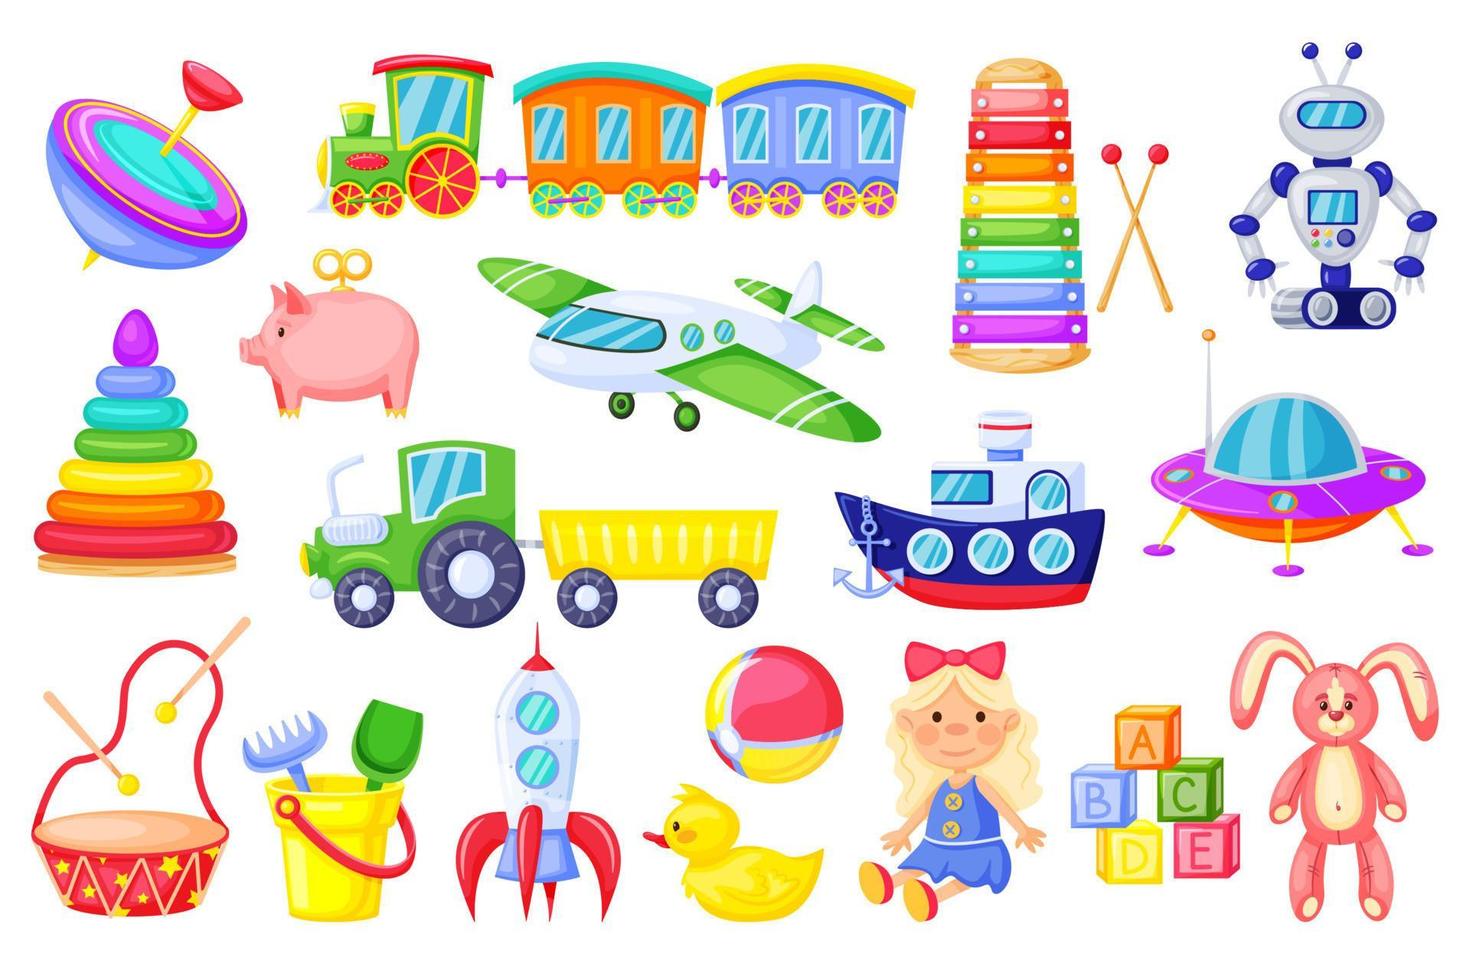 crianças brinquedos. desenho animado foguete, enviar, trem, fofa menina boneca, pato, pelúcia coelhinho, alfabeto cubos. colorida plástico brinquedo para crianças vetor conjunto